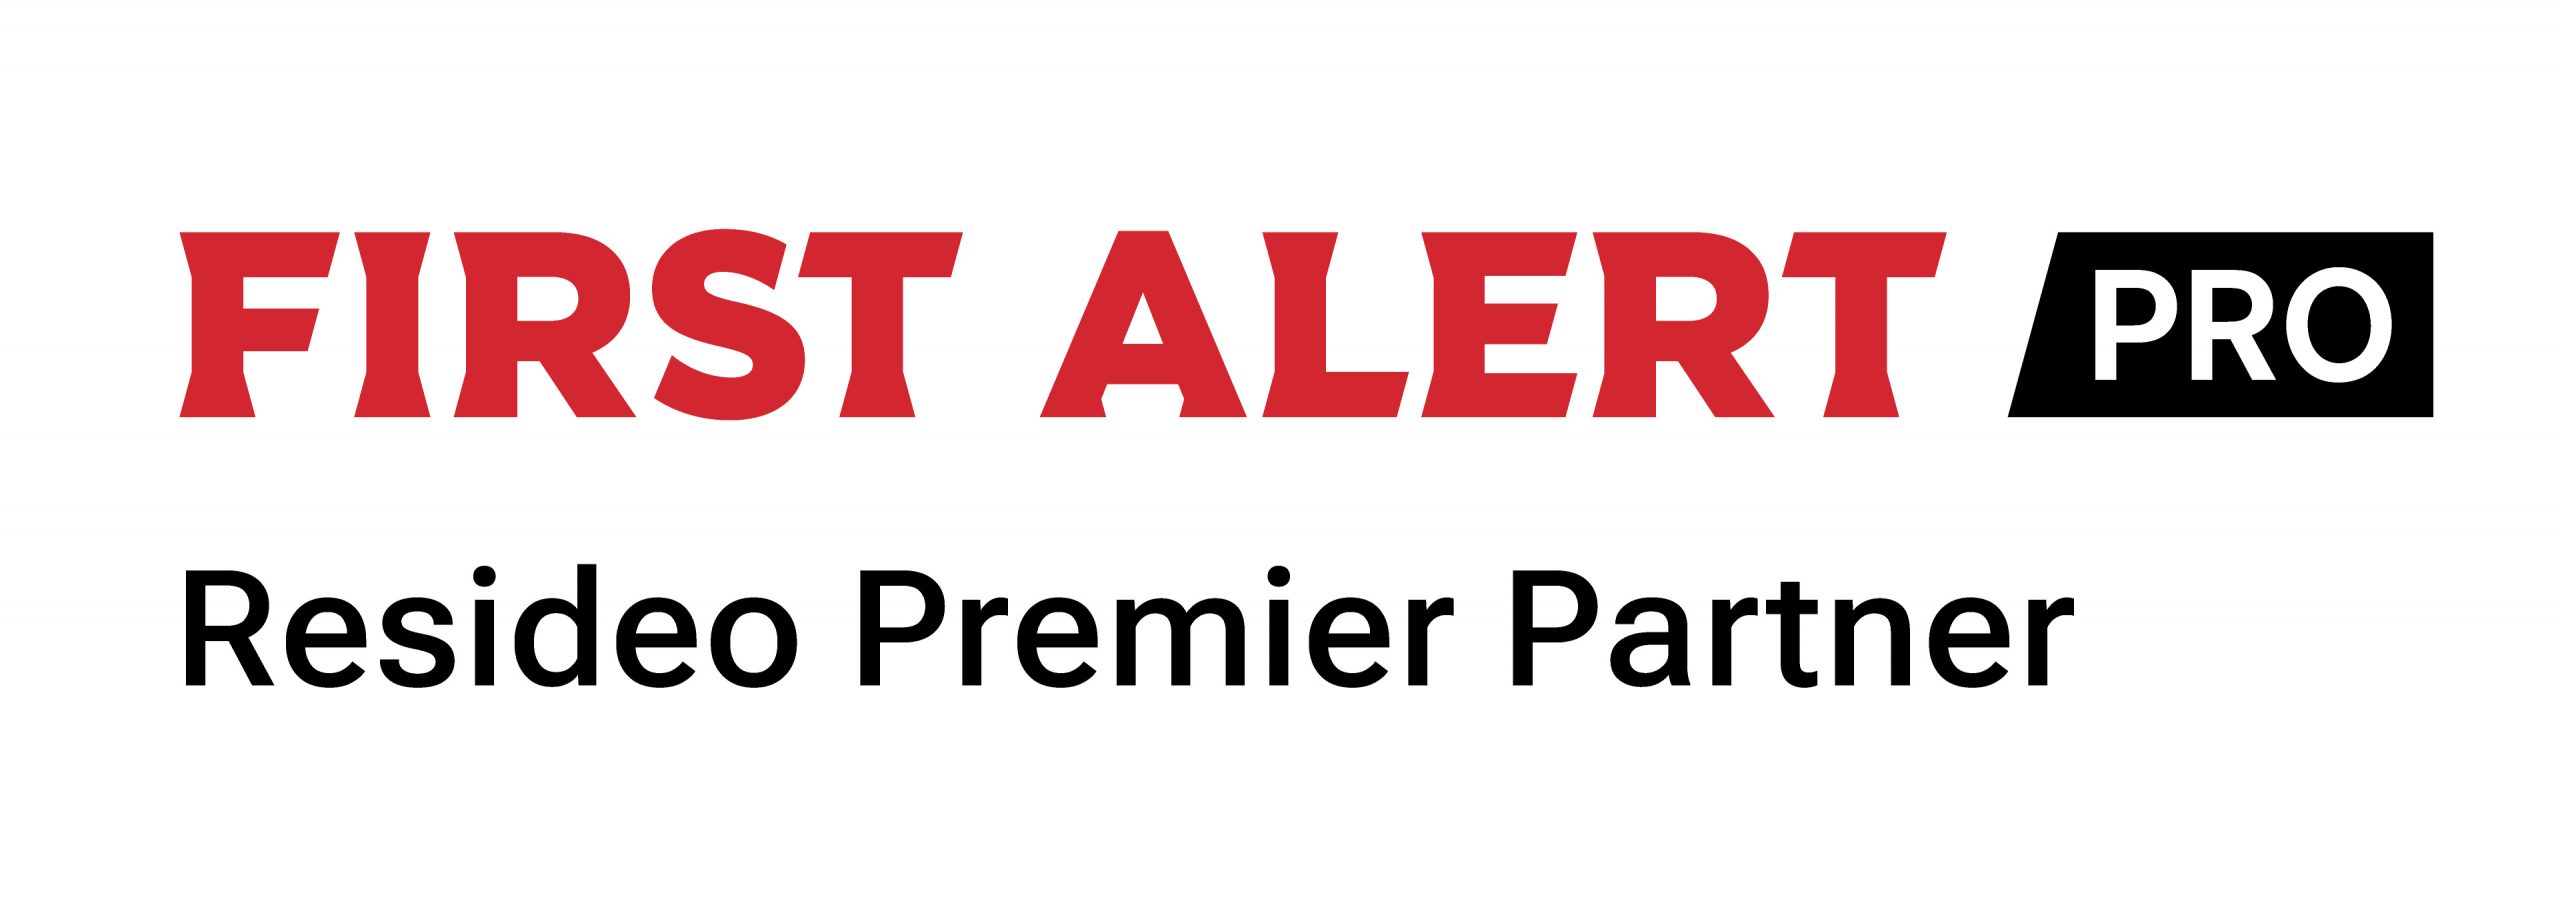 First Alert Pro Logo